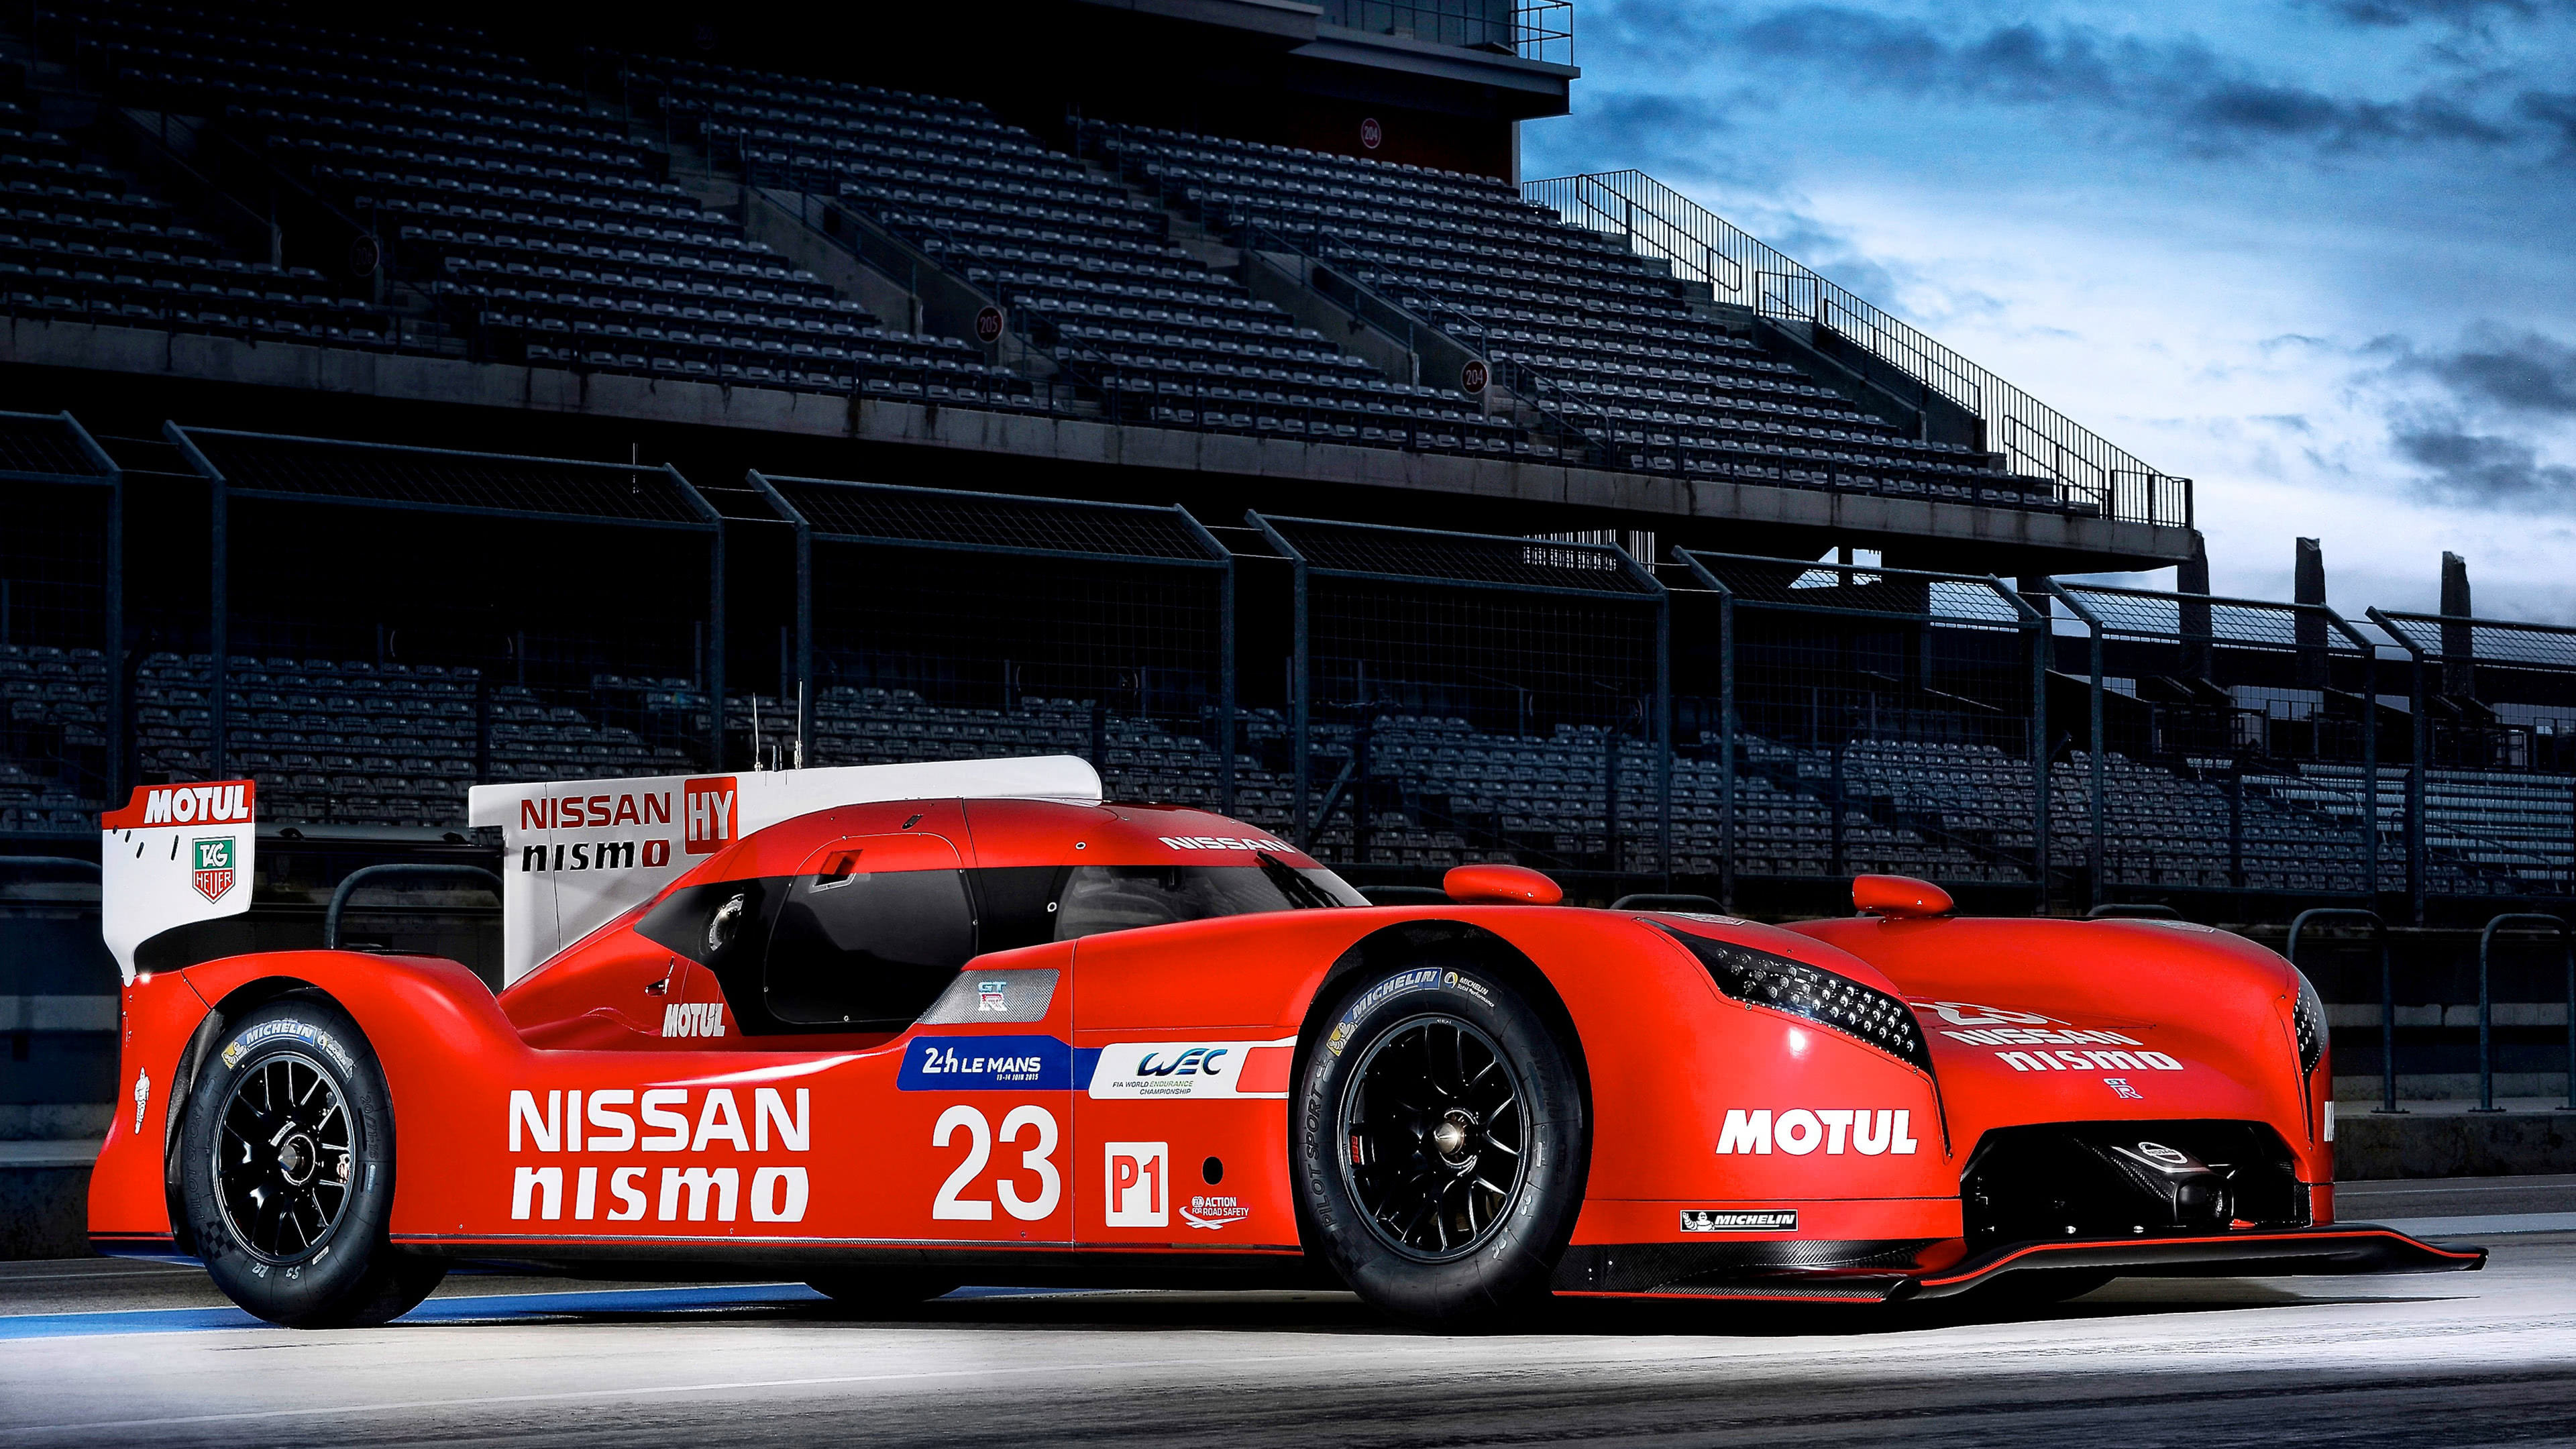 Le Mans race, Nissan GT R LM Nismo, UHD 4K wallpaper, Fierce competition, 3840x2160 4K Desktop